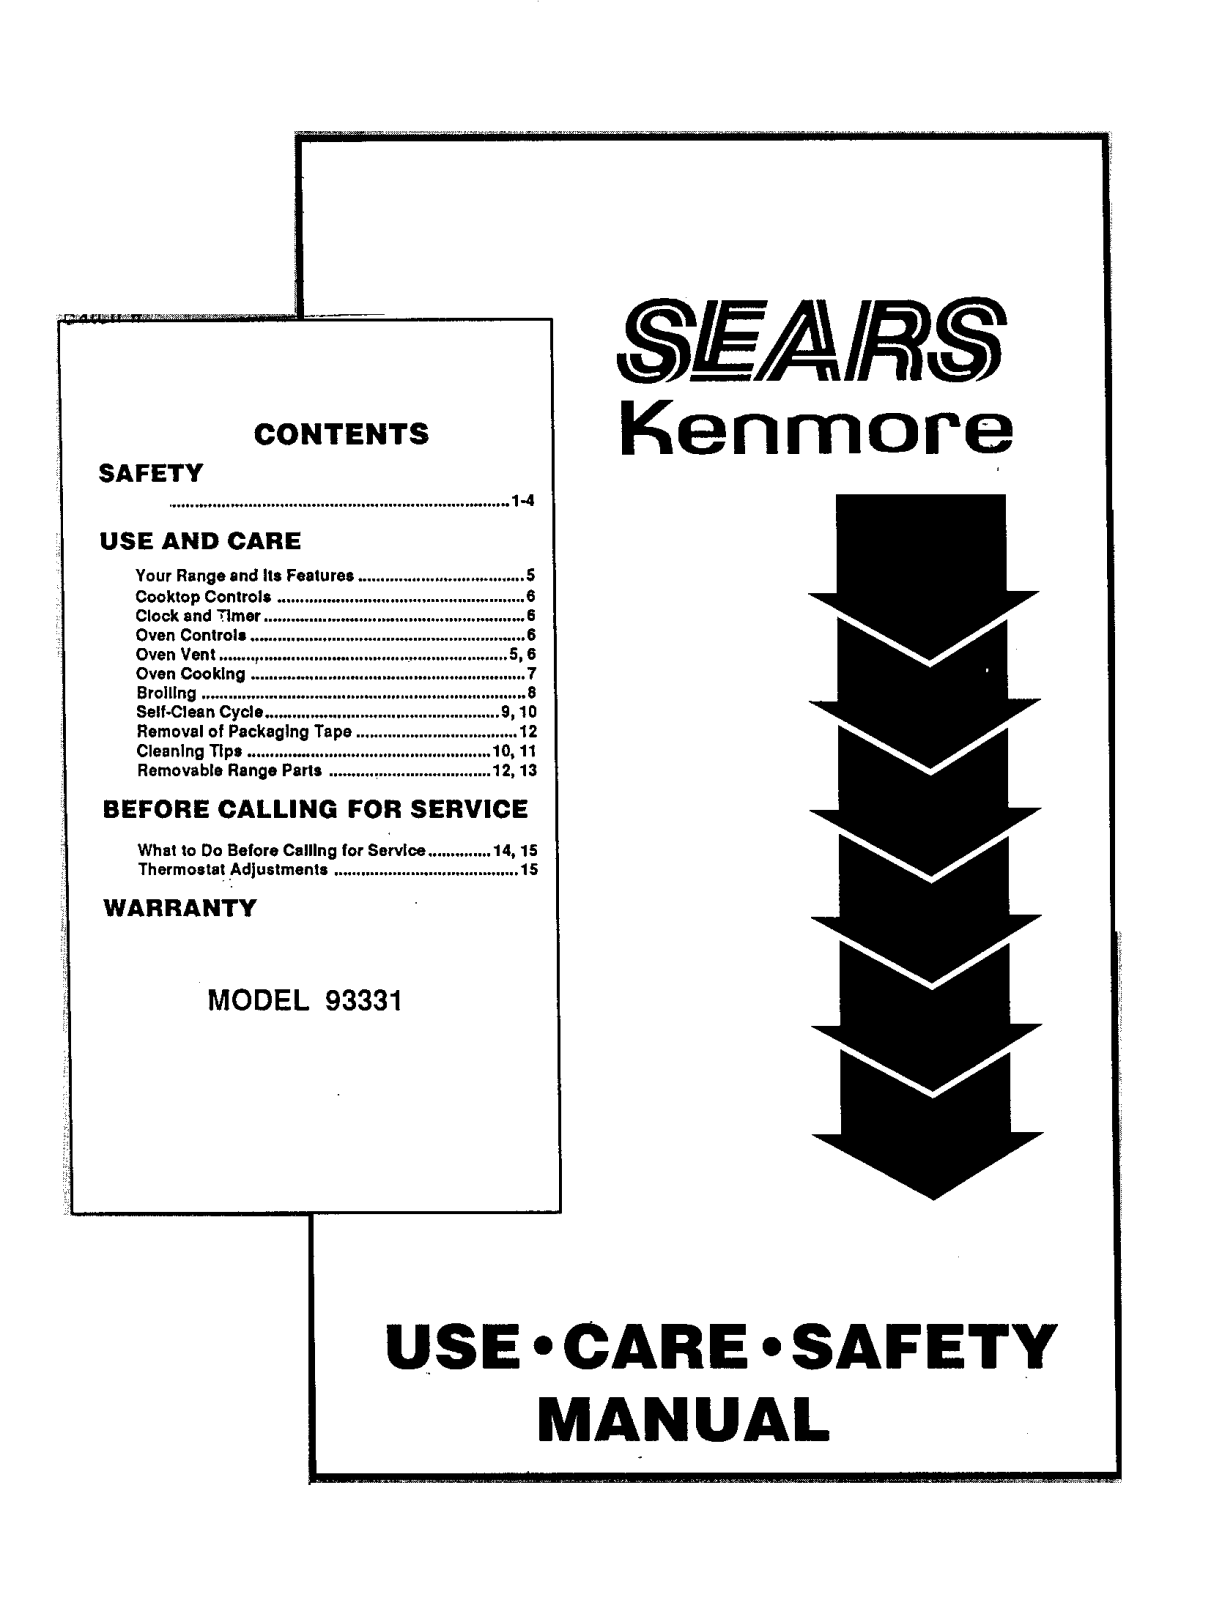 Kenmore 9119333190 Owner’s Manual